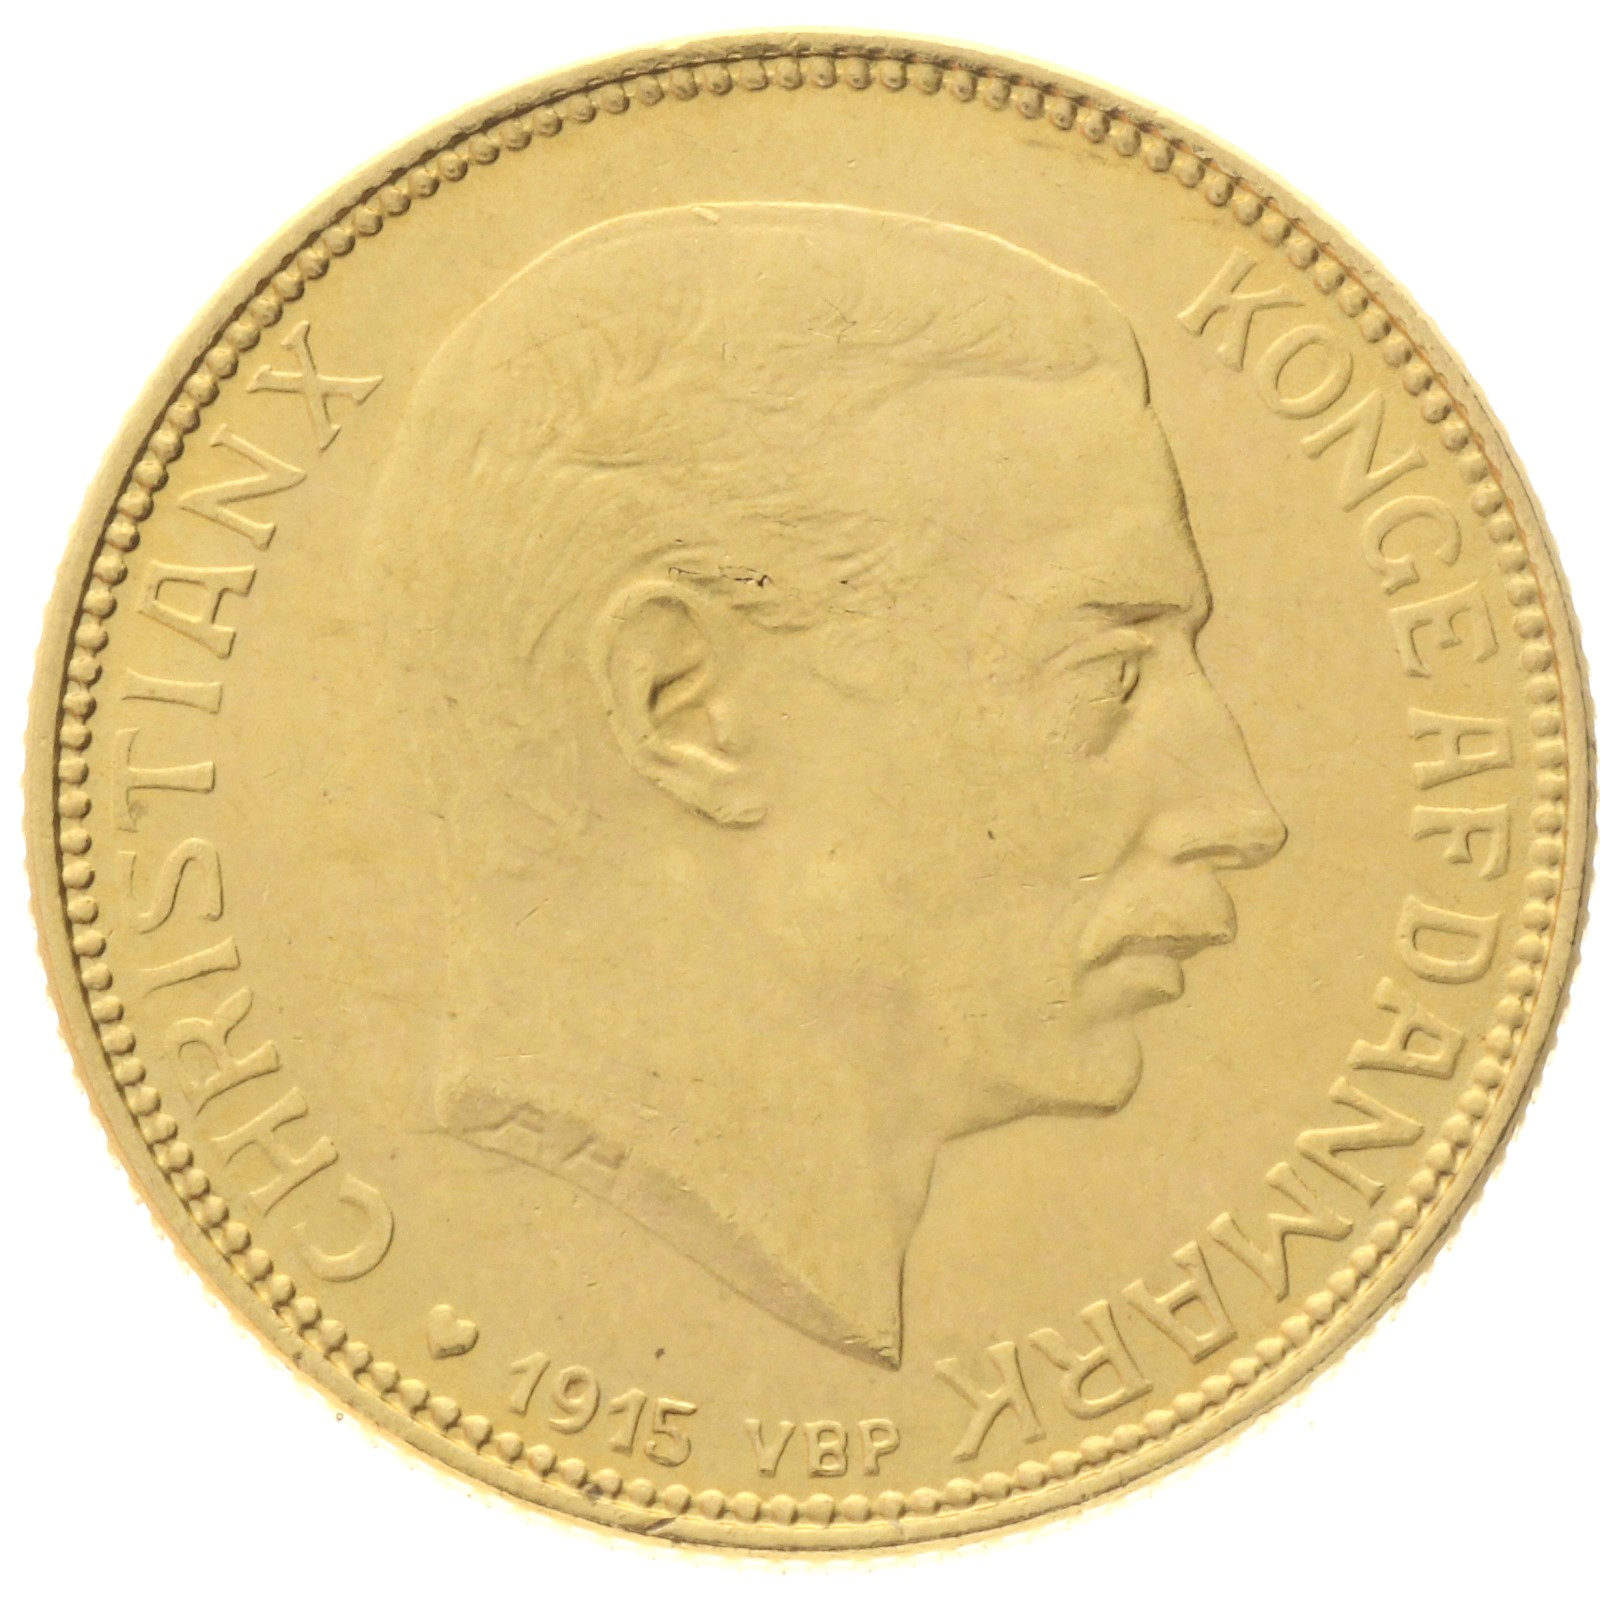 Denmark - 20 kroner - 1915 - Christian X